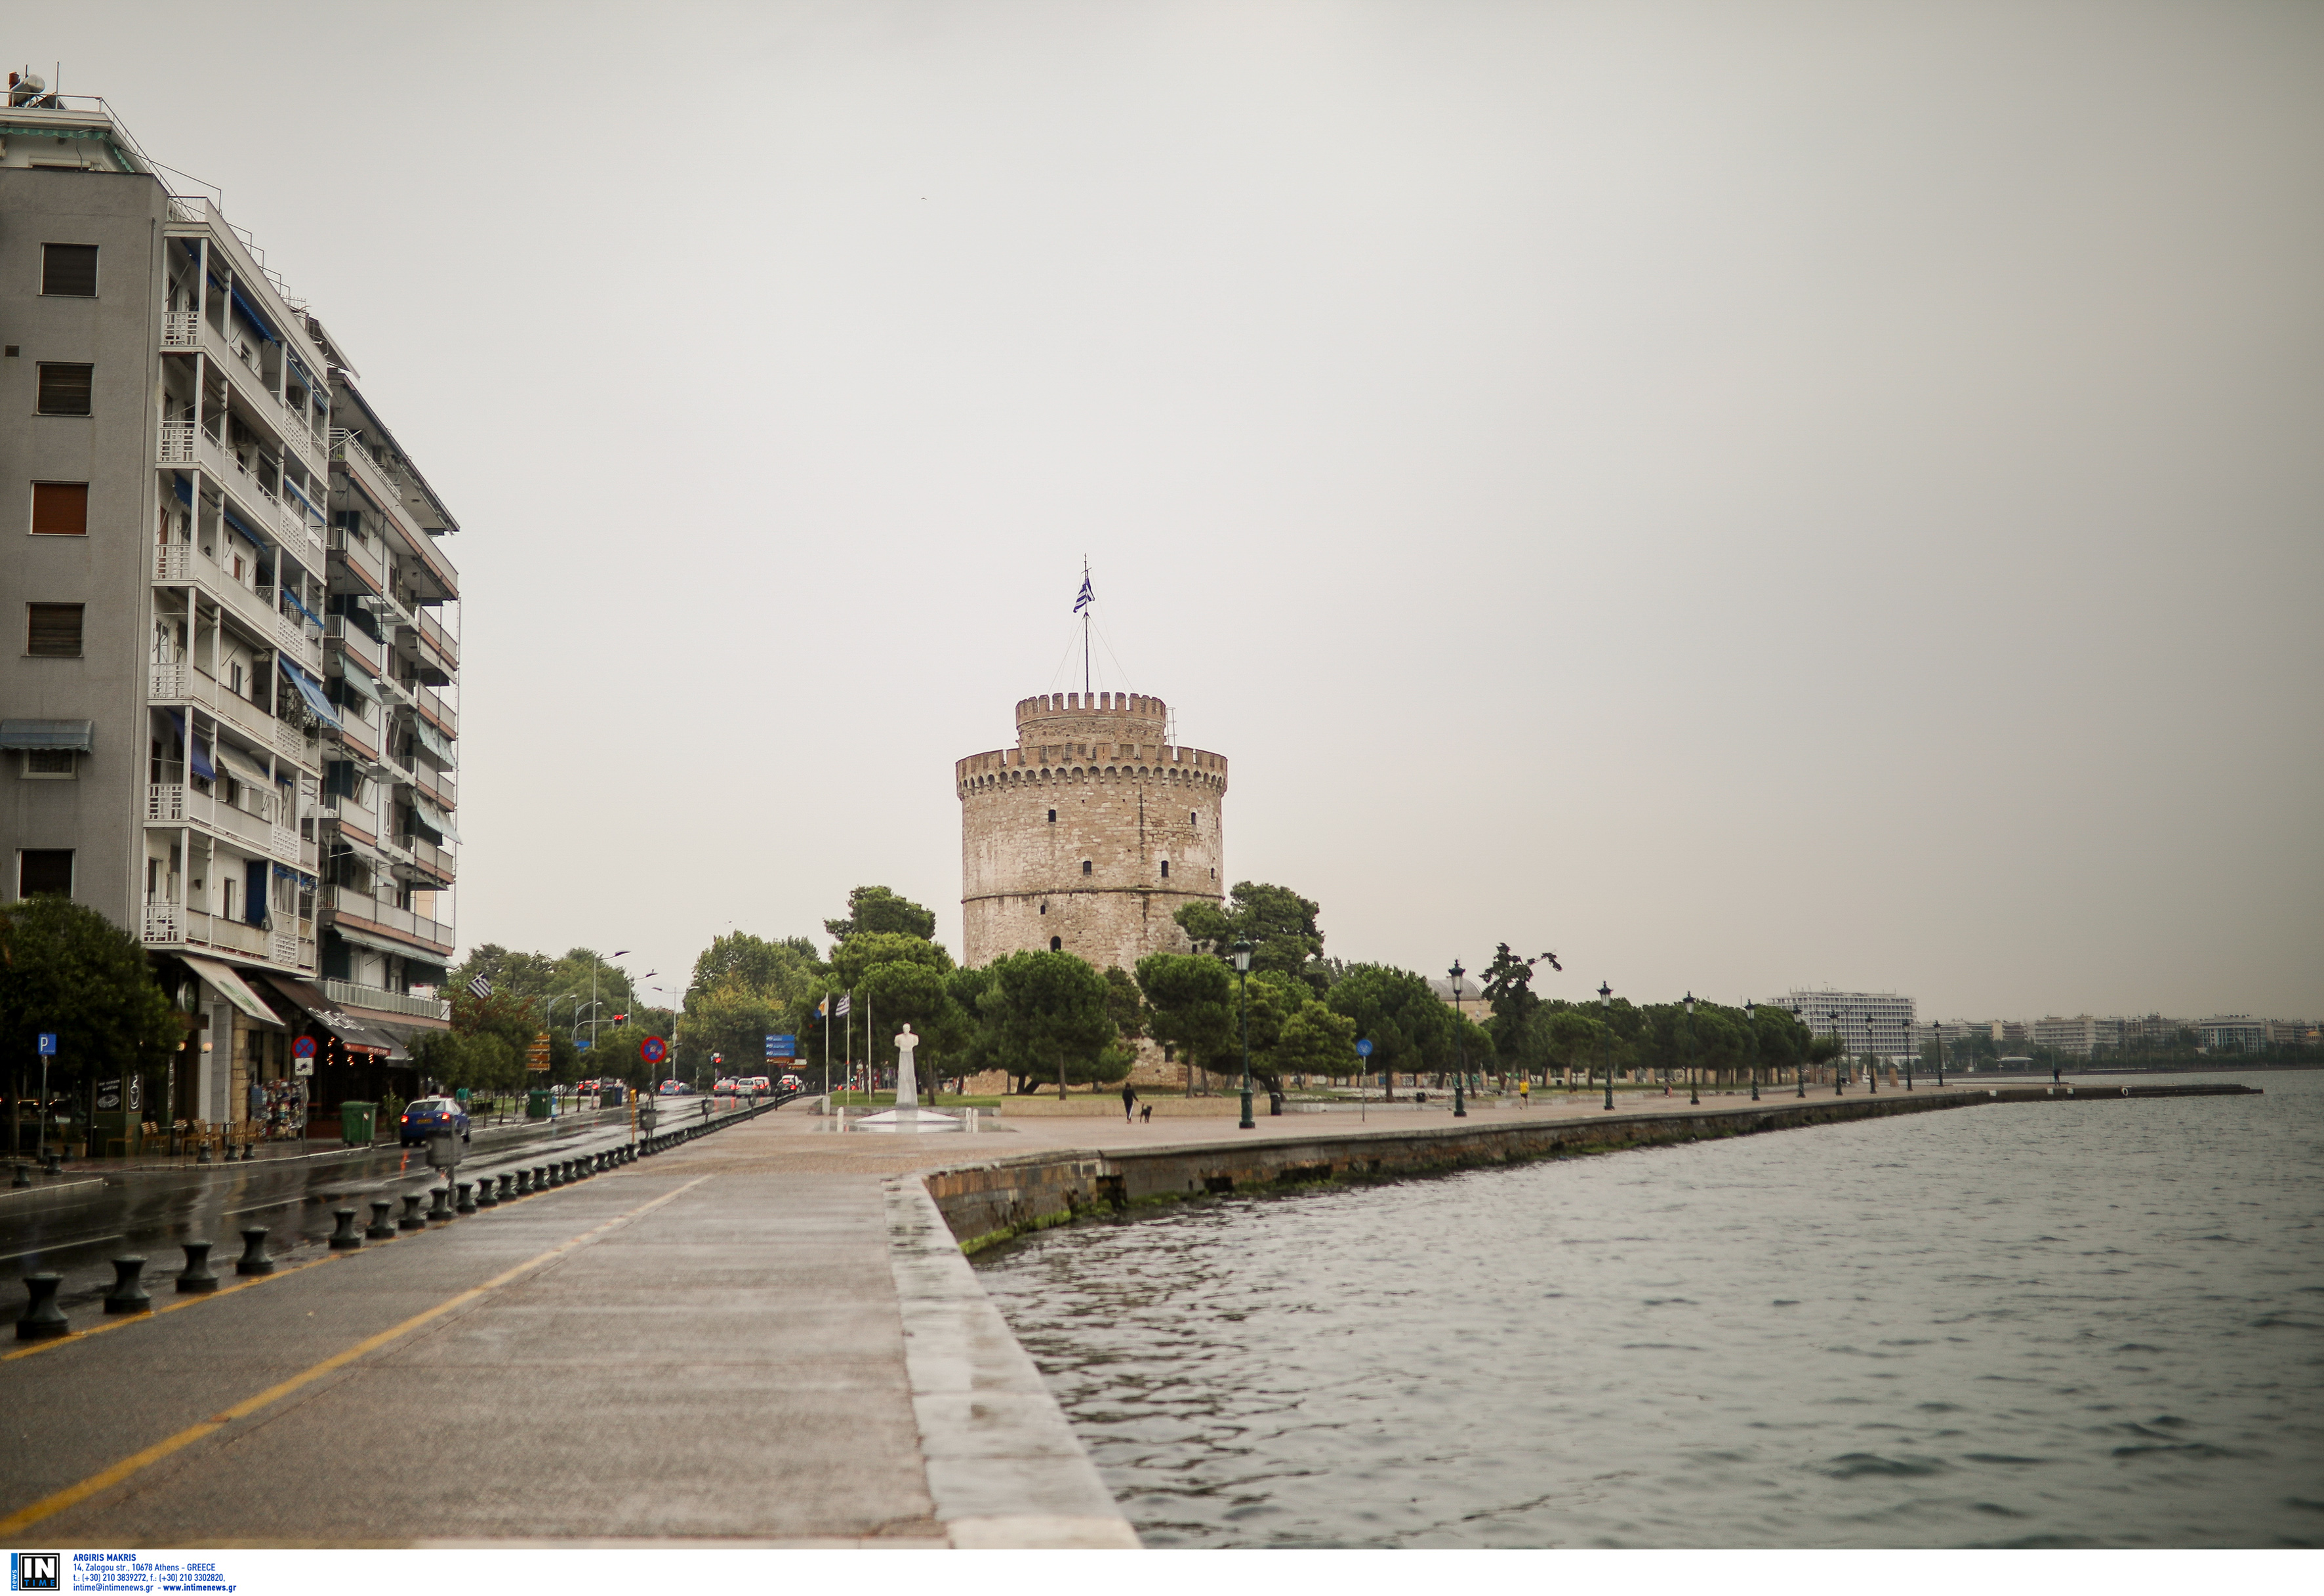 Θεσσαλονίκη: Δωρεάν ξεναγήσεις σε παλαιοχριστιανικά μνημεία και στο ρωμαϊκό παρελθόν της πόλης